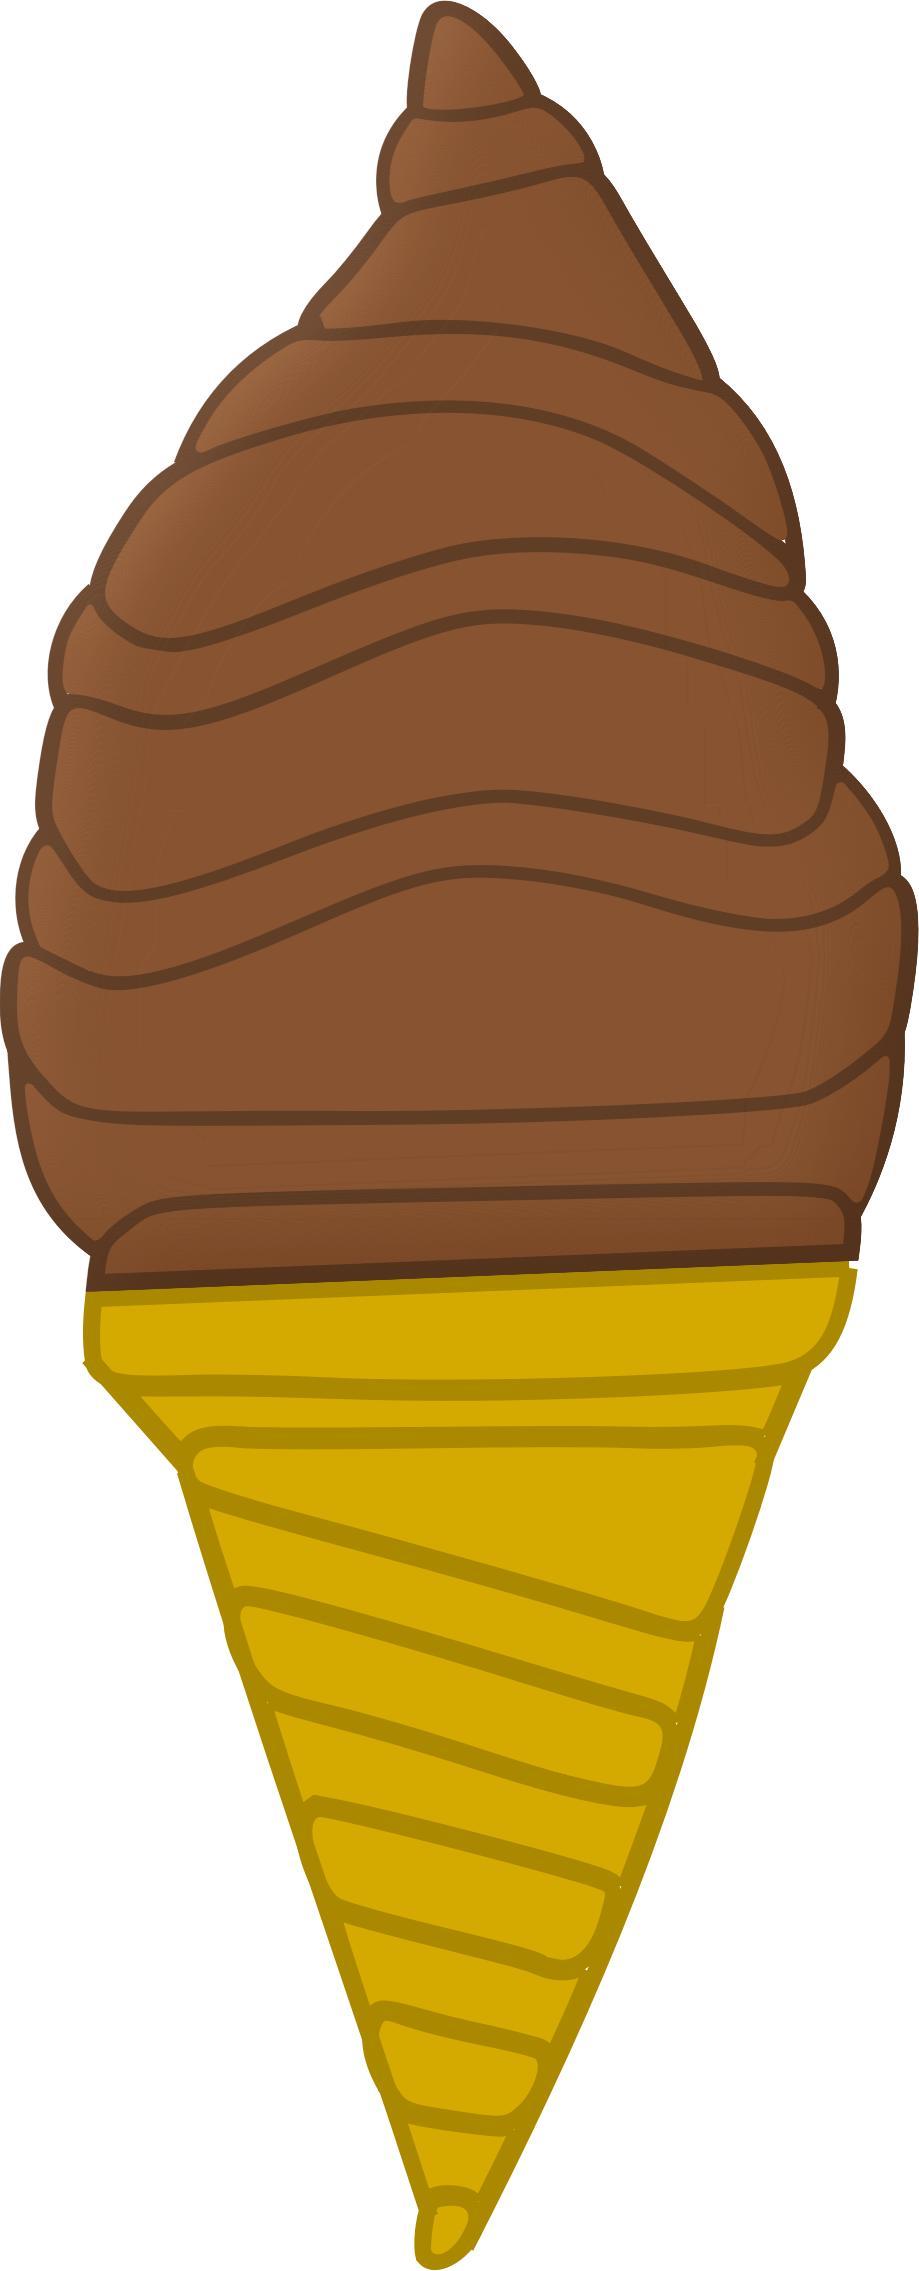 Chocolate Ice Cream Cone png transparent